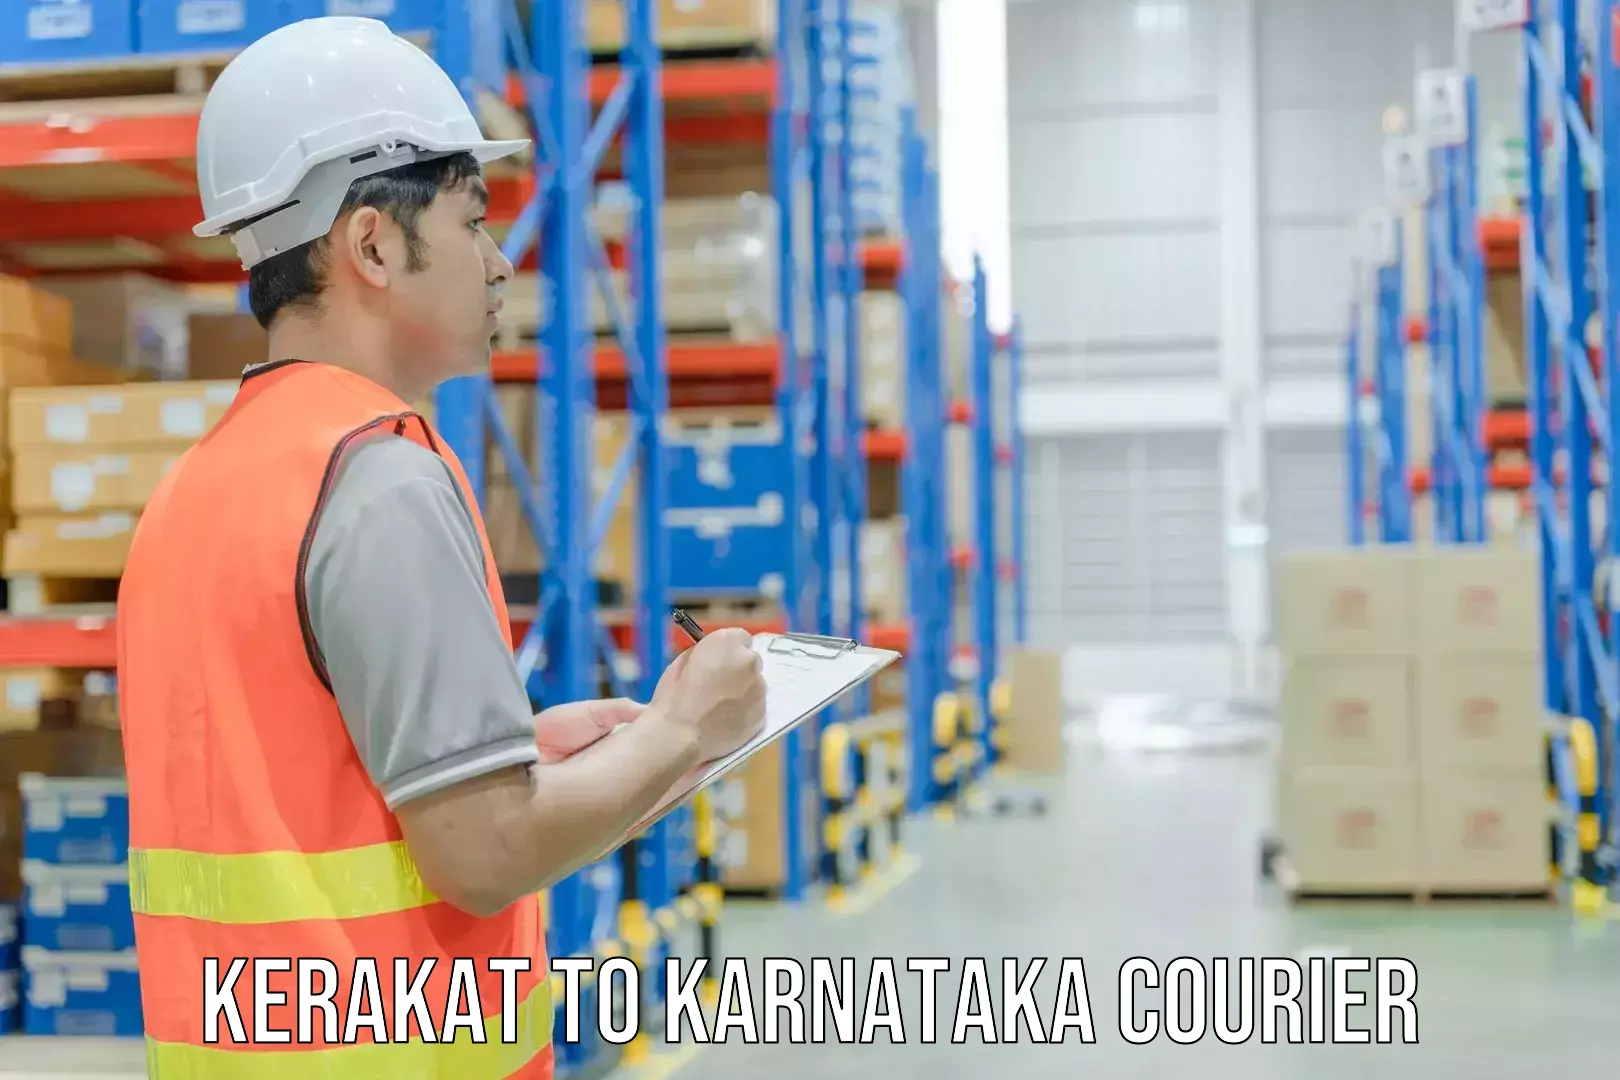 Efficient parcel tracking in Kerakat to Karnataka